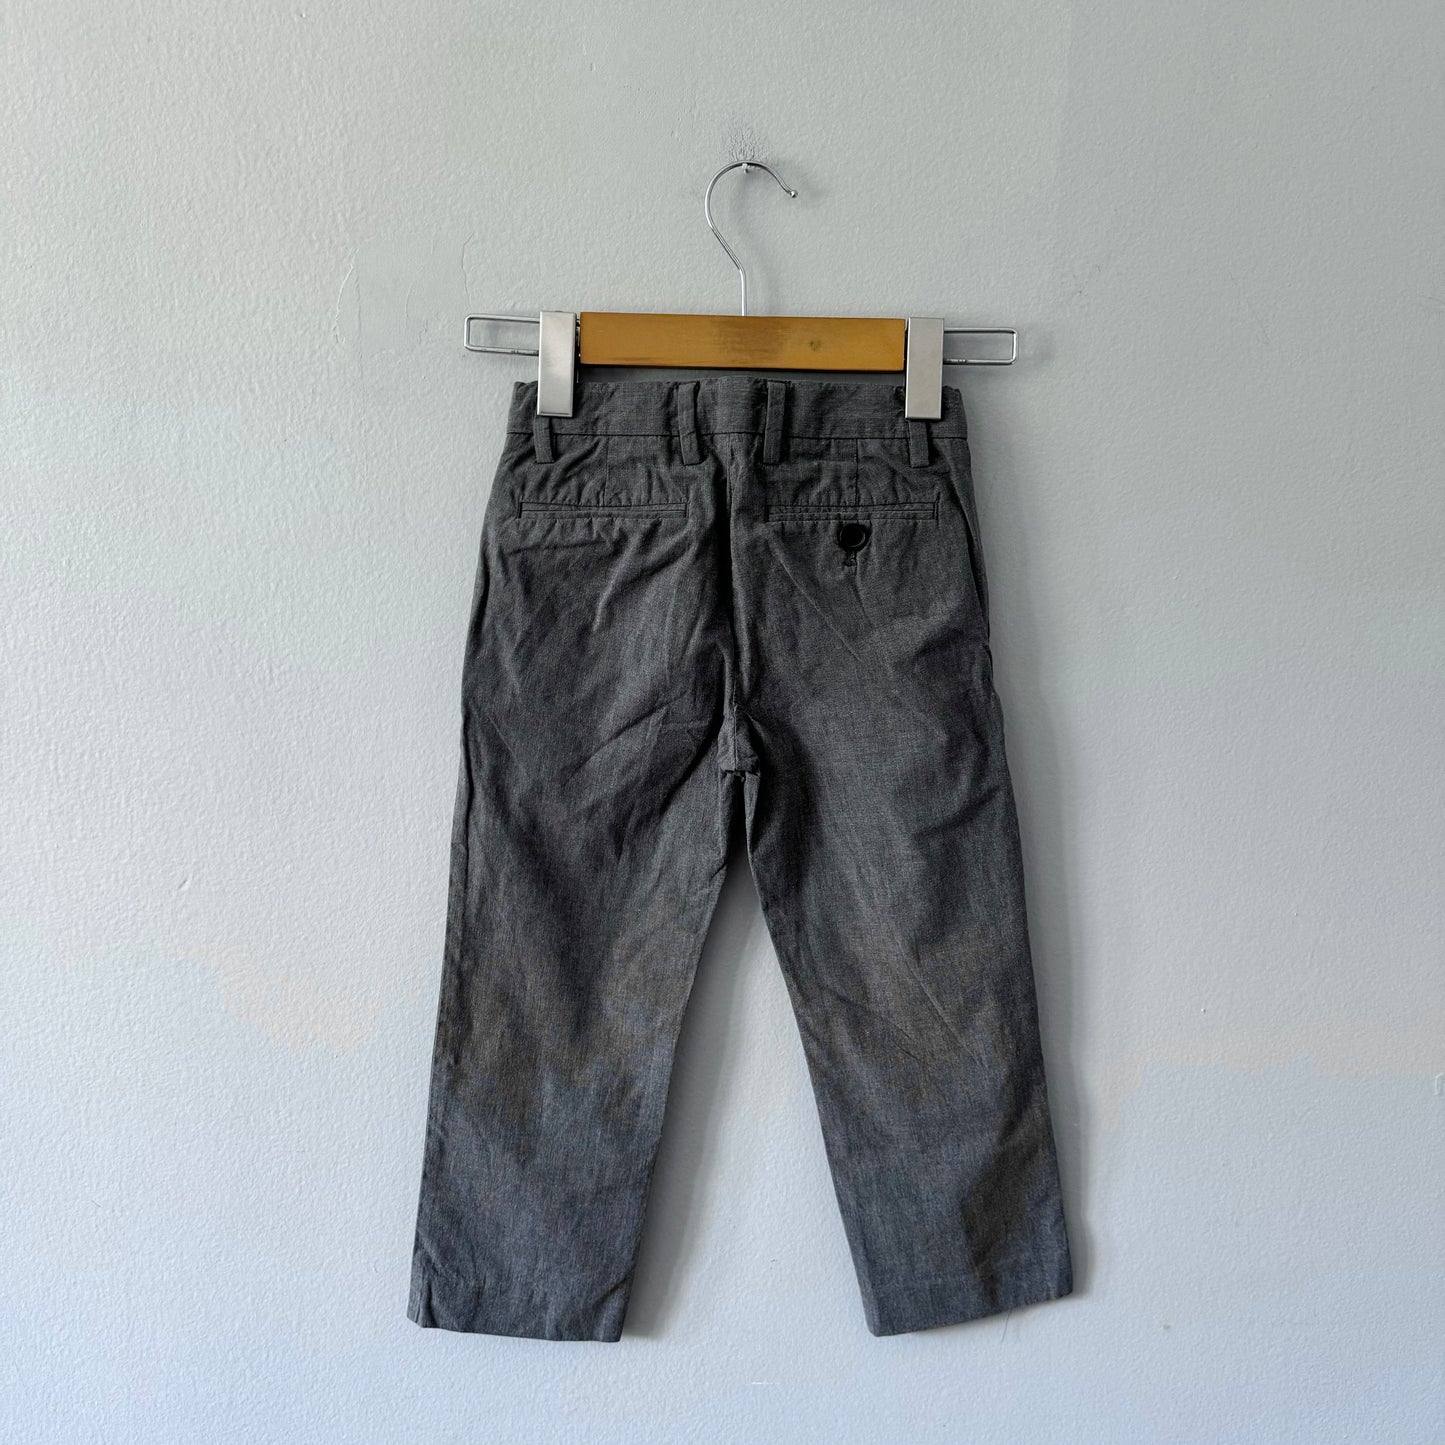 Crewcuts / Grey cotton pants / 4Y